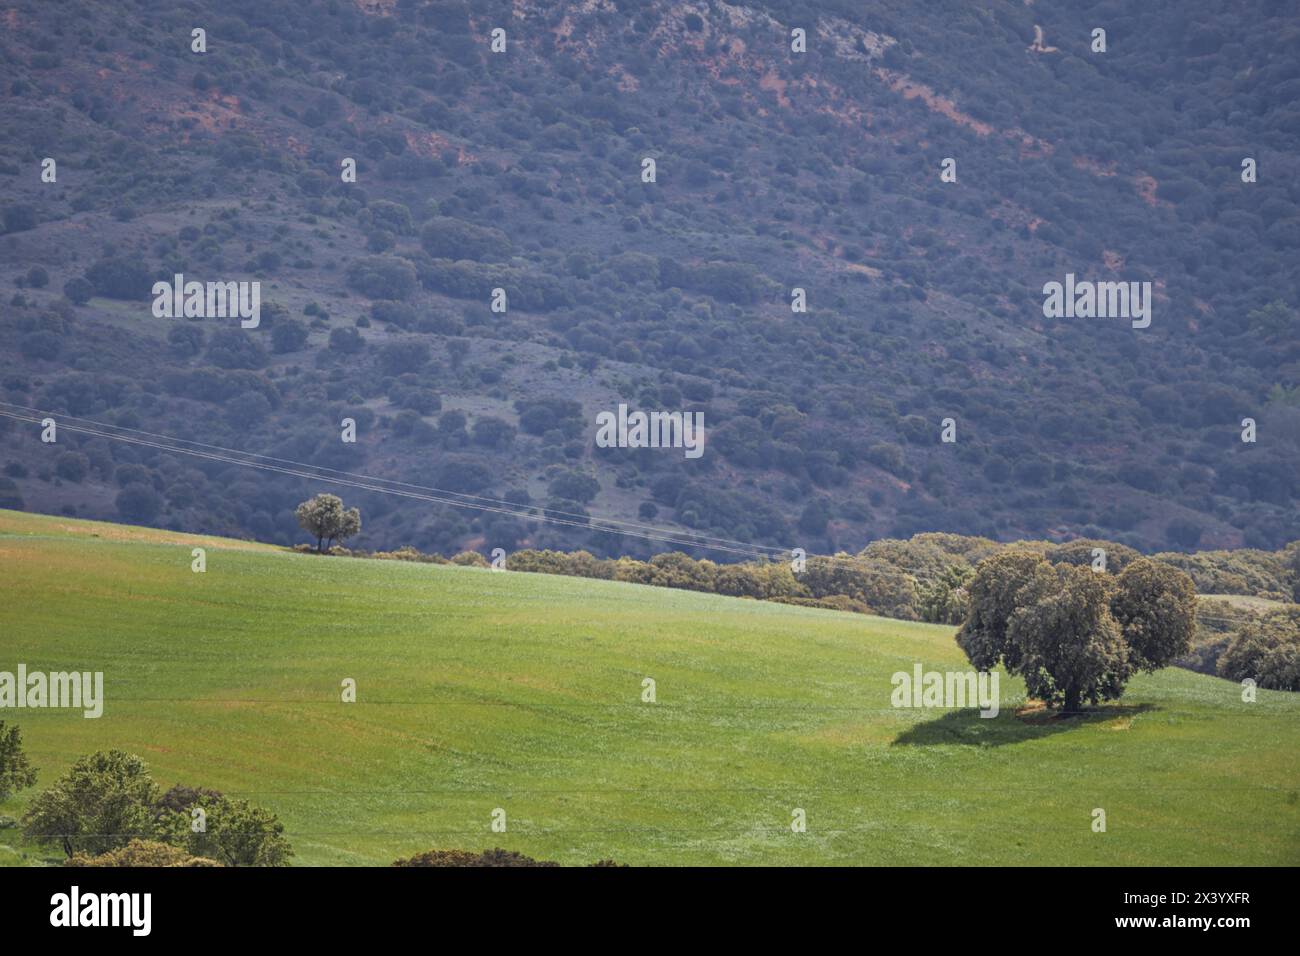 Un paesaggio di campagna con alberi bassi solitari, linee elettriche e prati a riposo Foto Stock